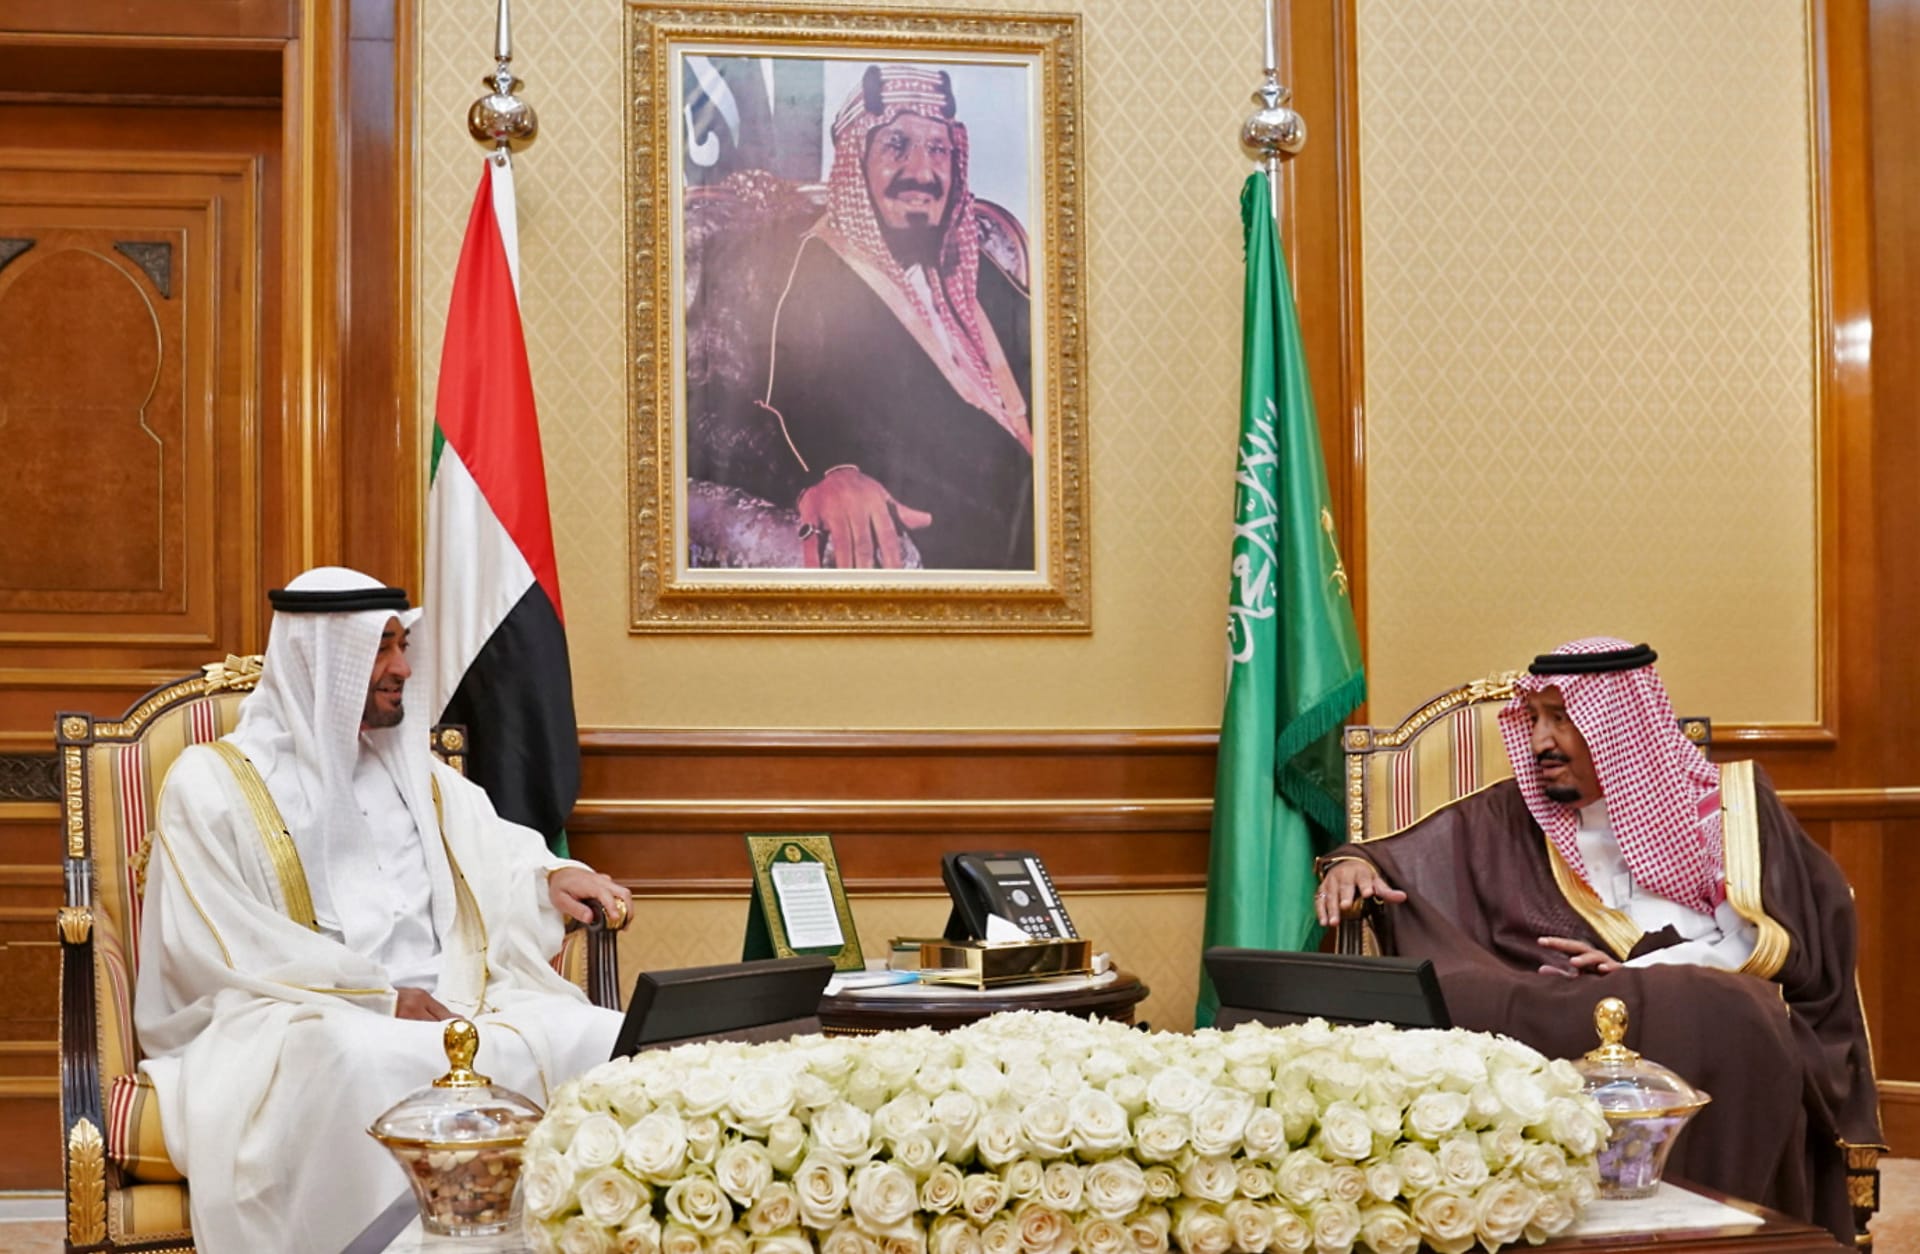 السعودية والإمارات تدعوان لوقف كامل للتحركات العسكرية بين طرفي الأزمة باليمن